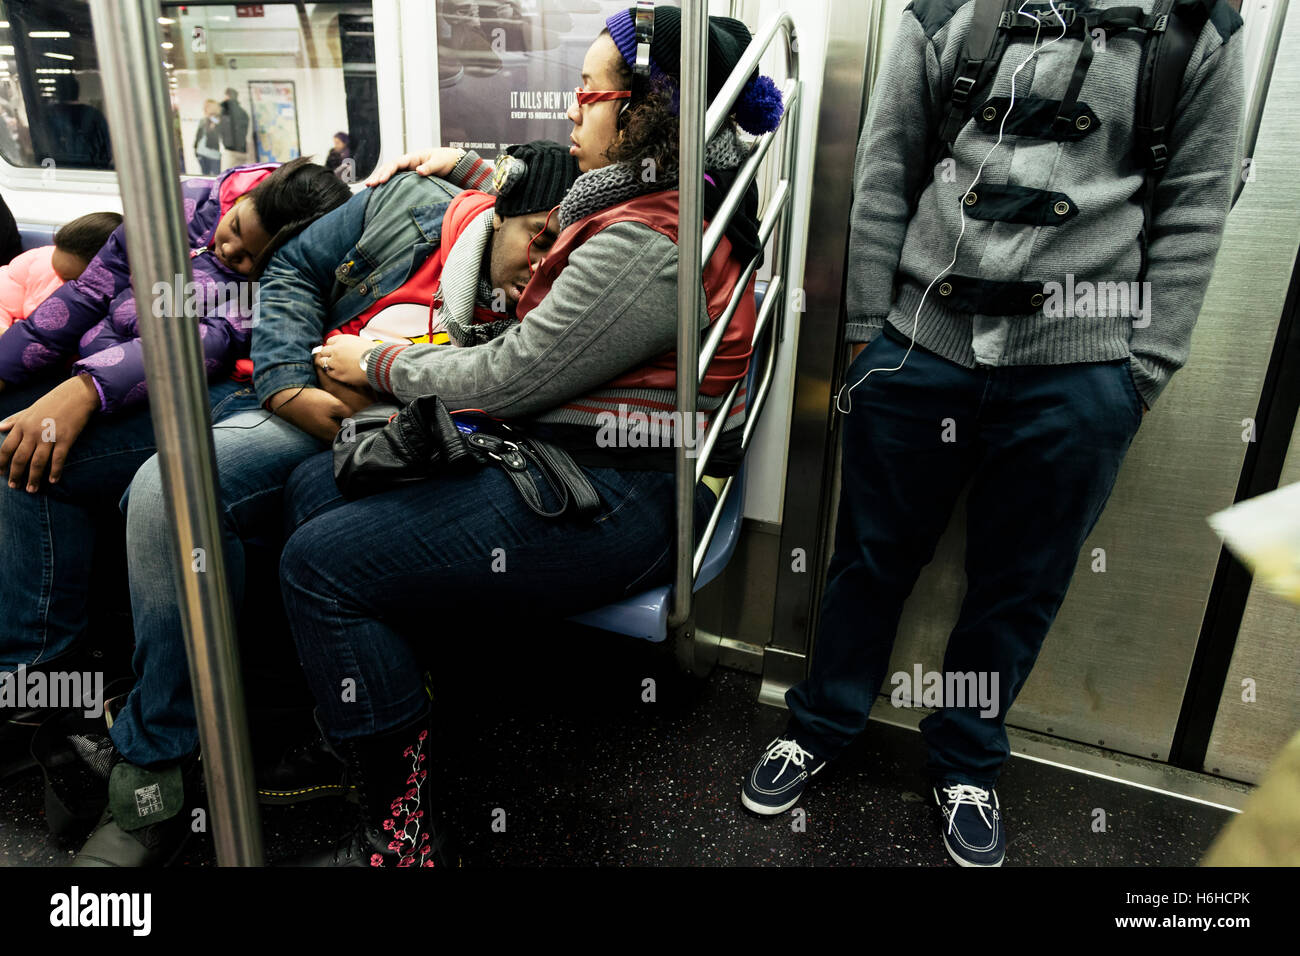 NEW-YORK - NOV 17: Famiglia guida la metropolitana è utilizzando il viaggio per ottenere un po' di sonno in New York, Stati Uniti d'America il 17 novembre 2012. Foto Stock